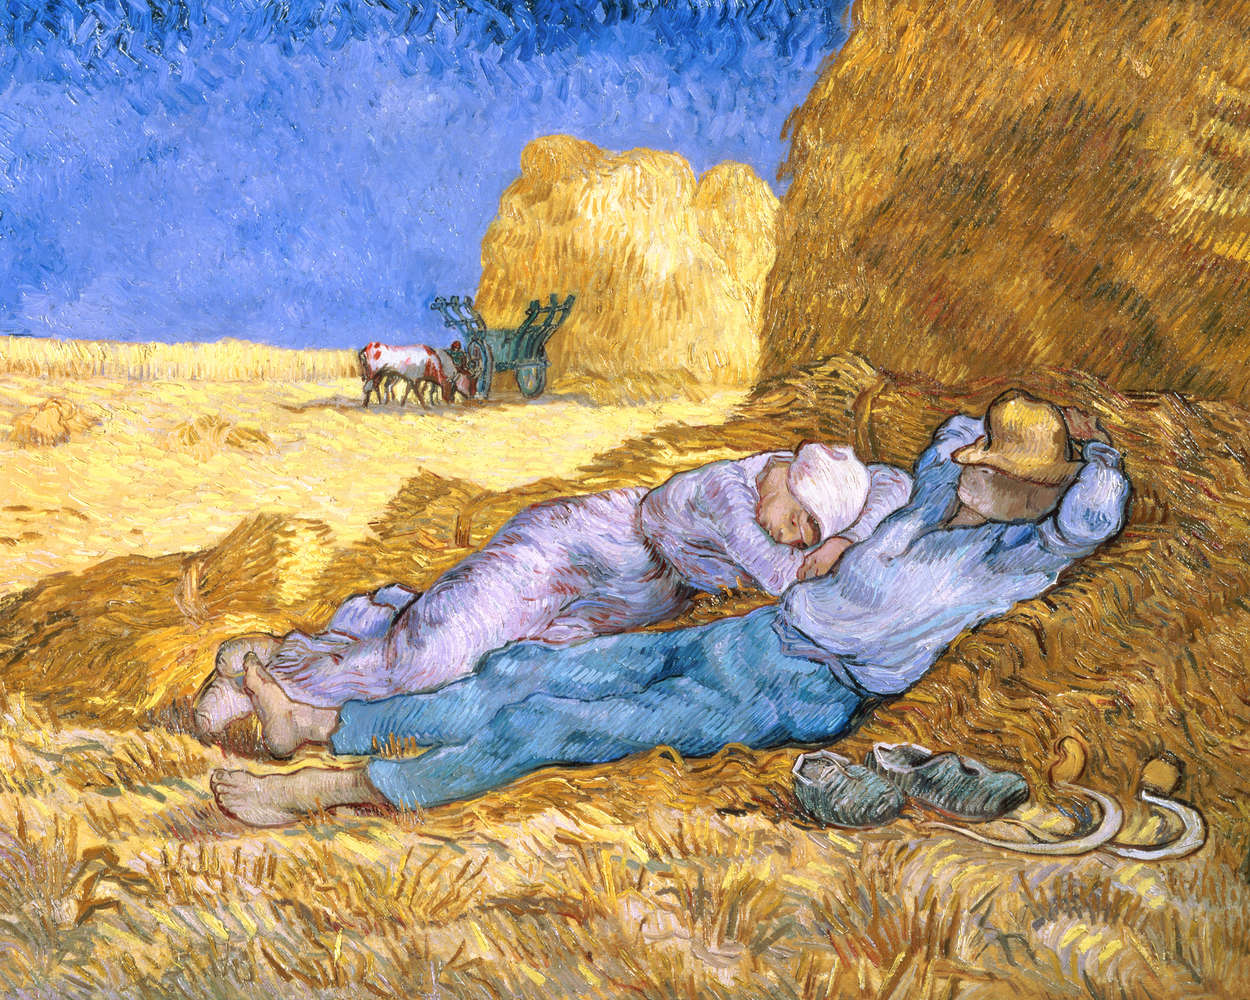             Il murale "La Siesta dopo Millet" di Vincent van Gogh
        